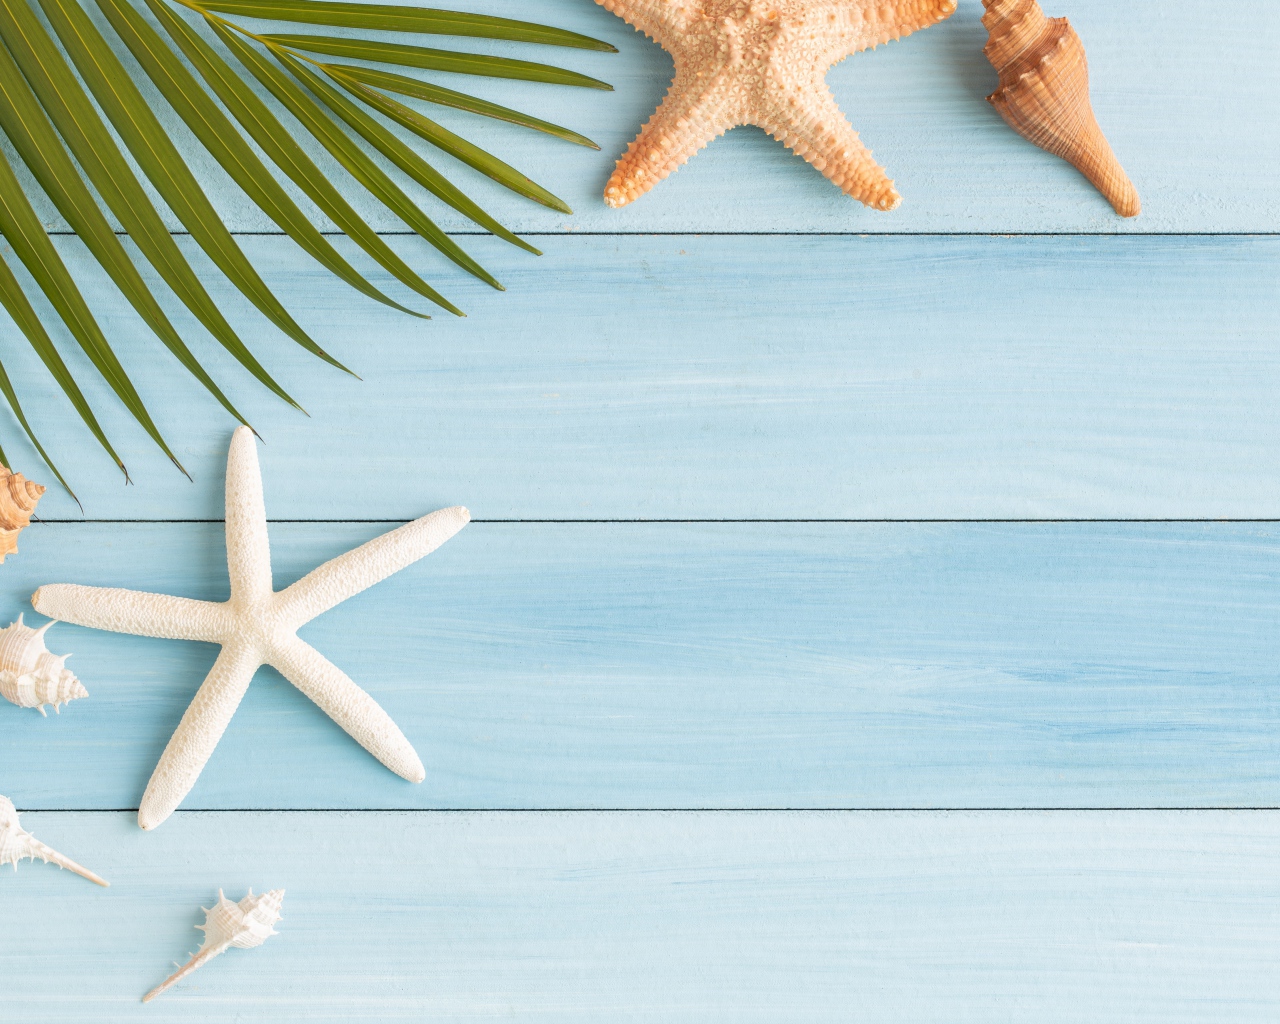 Пальмовый лист на столе с ракушками и морскими звездами 